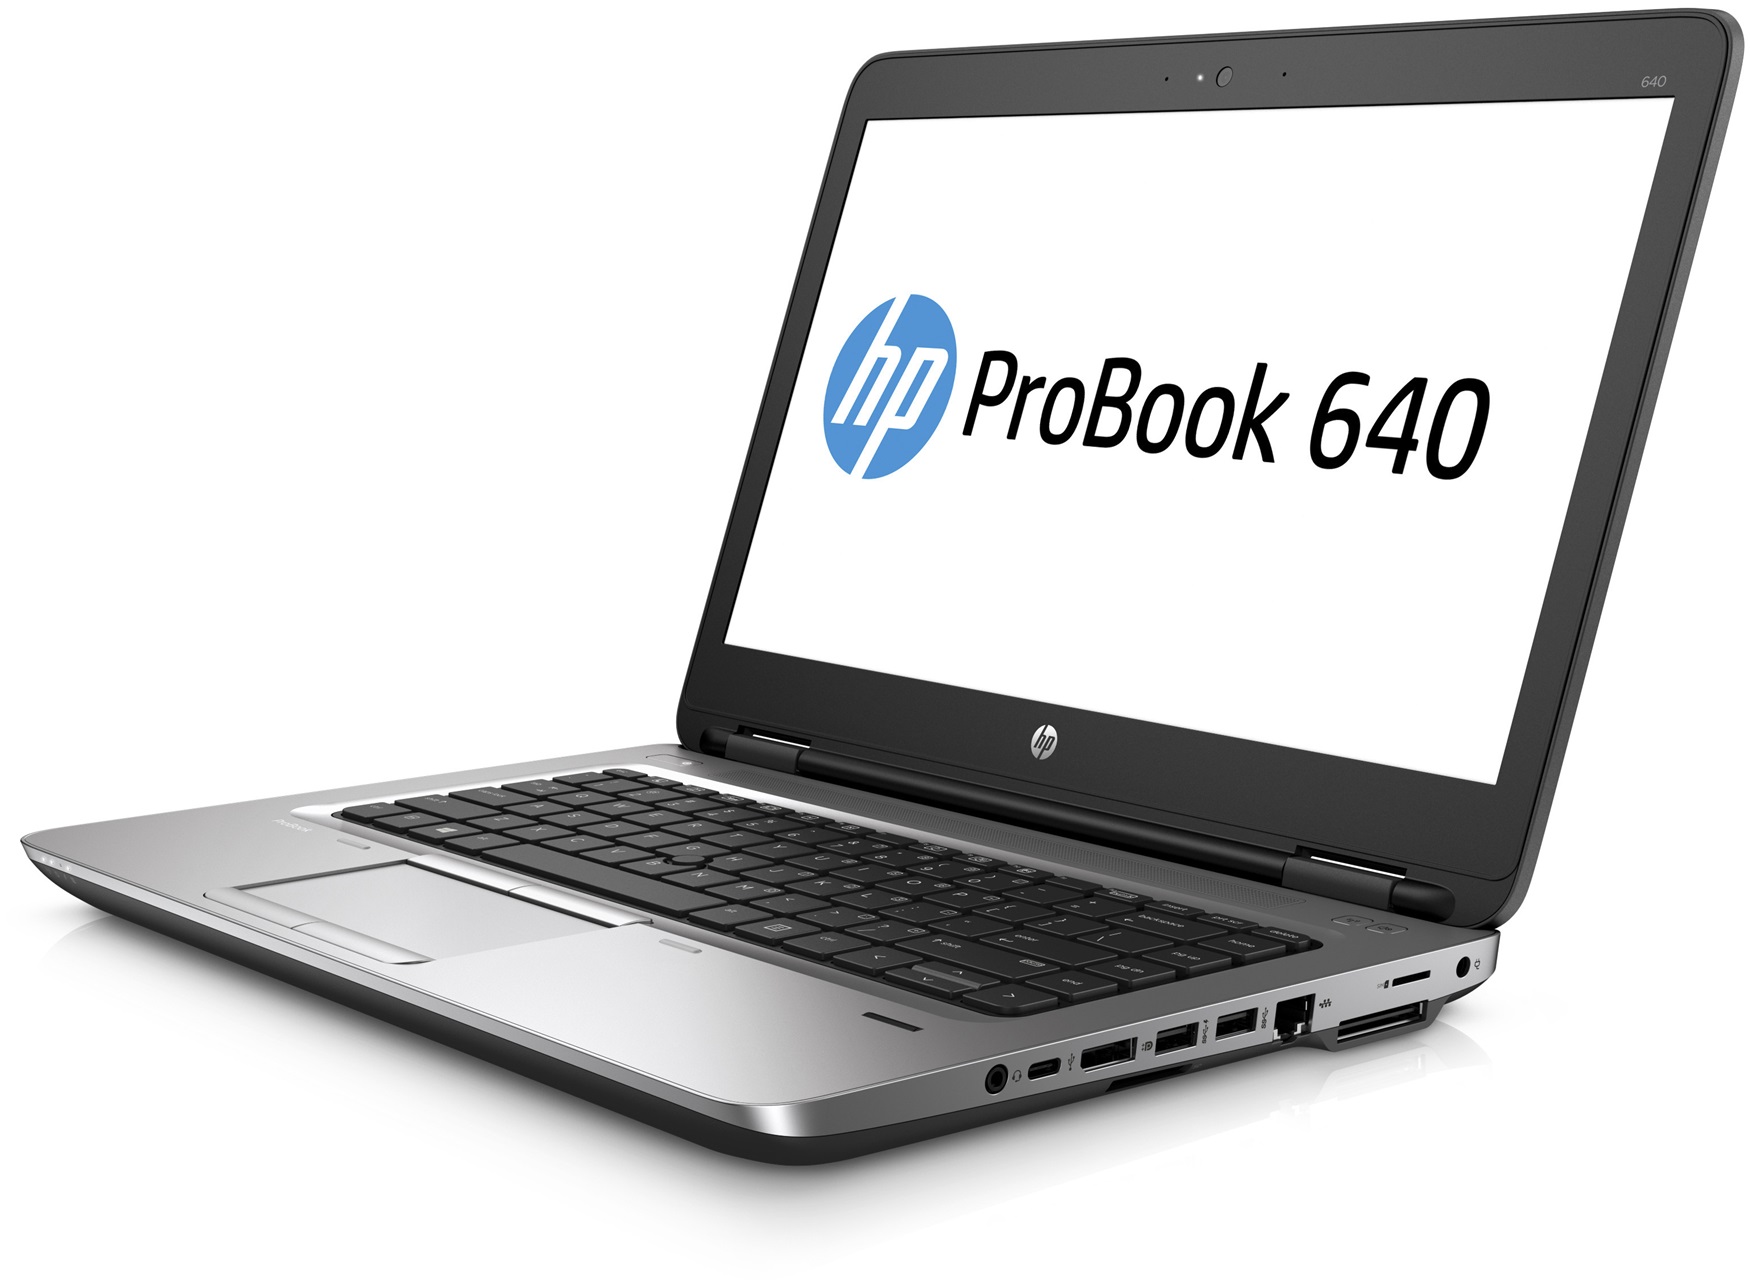 Portátil HP Probook 640 G2 GRADO B teclado en castellano (Intel Core i5 6200U 2.3Ghz/8GB/240SSD-M.2/14FHD/NO-DVD/W10P) Preinstalado